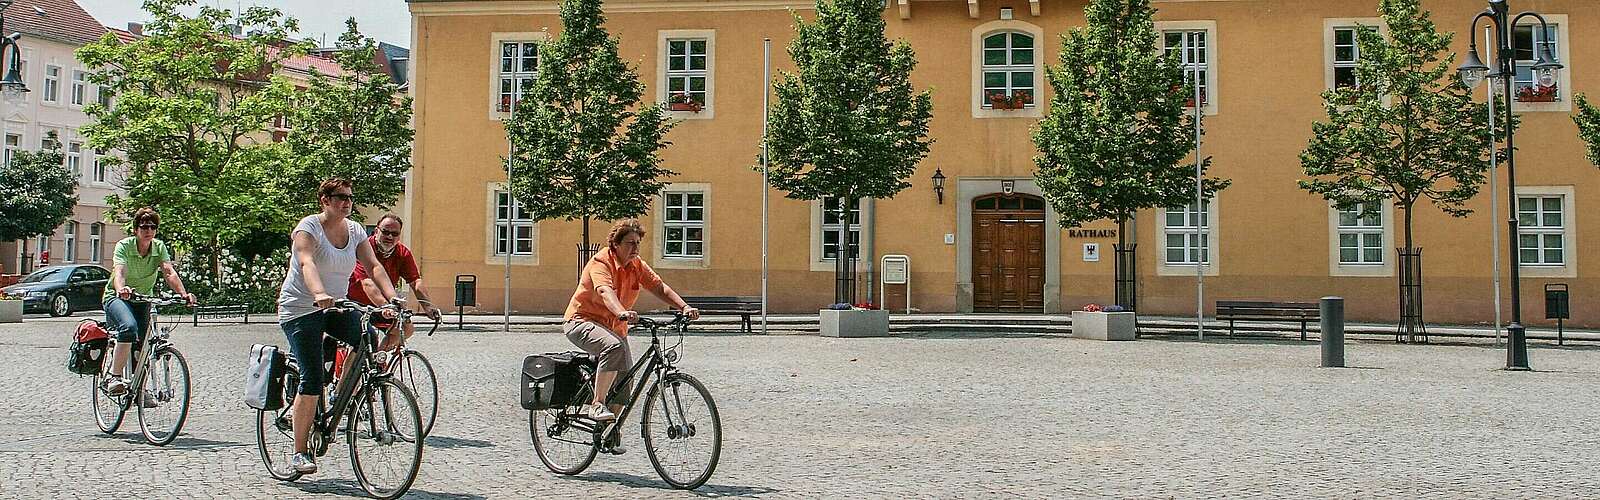 Radfahrer auf dem Marktplatz in Bad Liebenwerda,
        
    

        Foto: Fotograf / Lizenz - Media Import/Steffen Lehmann